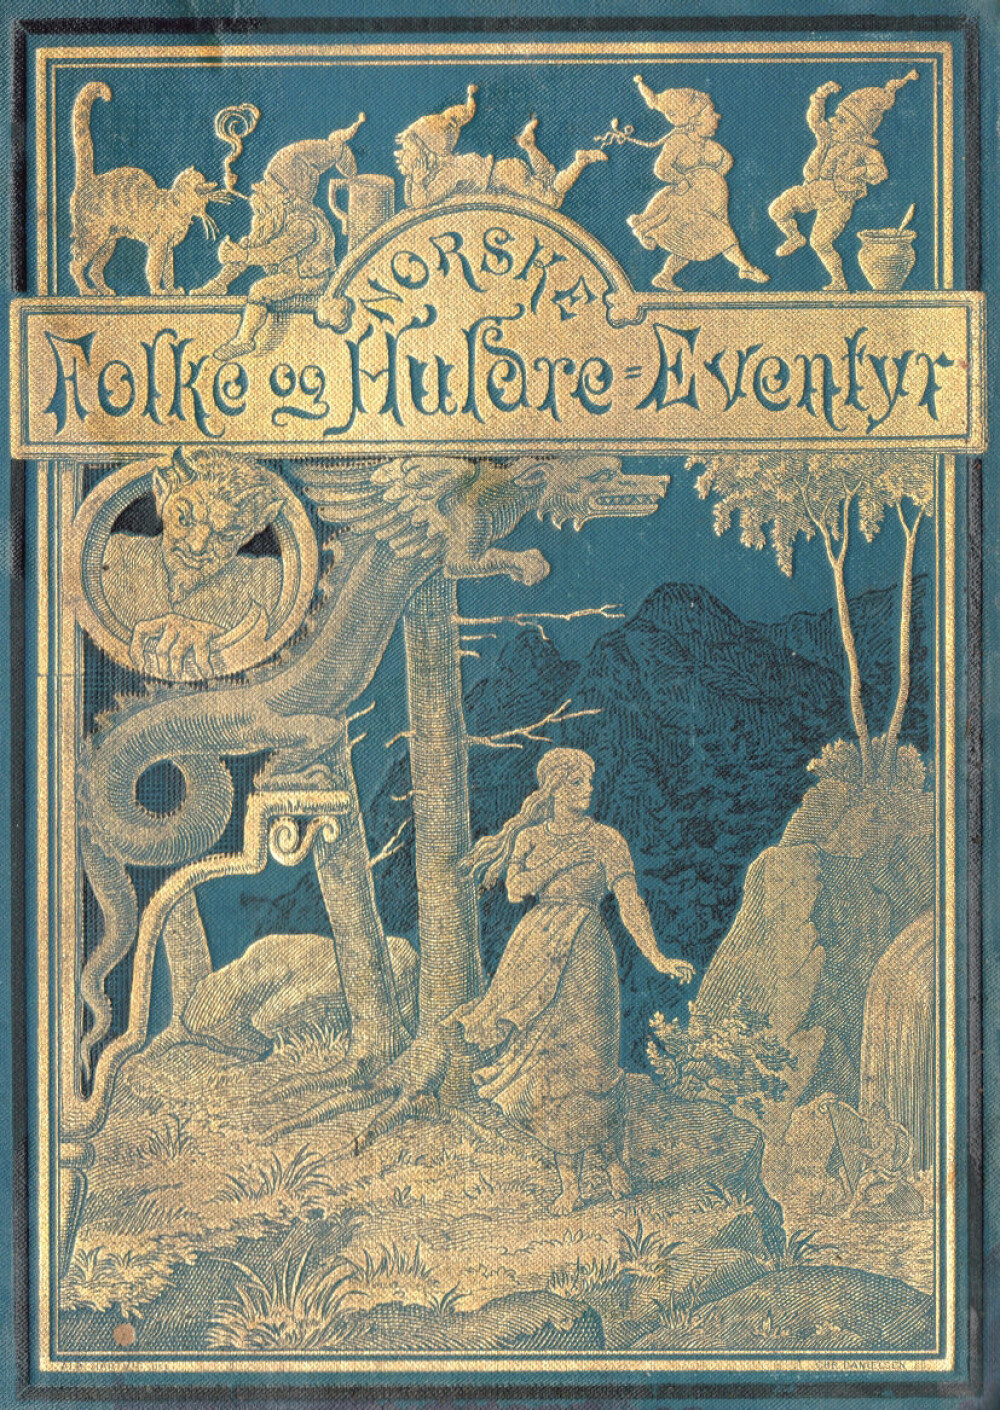 <b>DANSK VER­SJON:</b> Nors­ke Fol­ke og Huld­re-Even­tyr i en ut­ga­ve ut­gitt i Kø­ben­havn før­s­te gang i 1879.